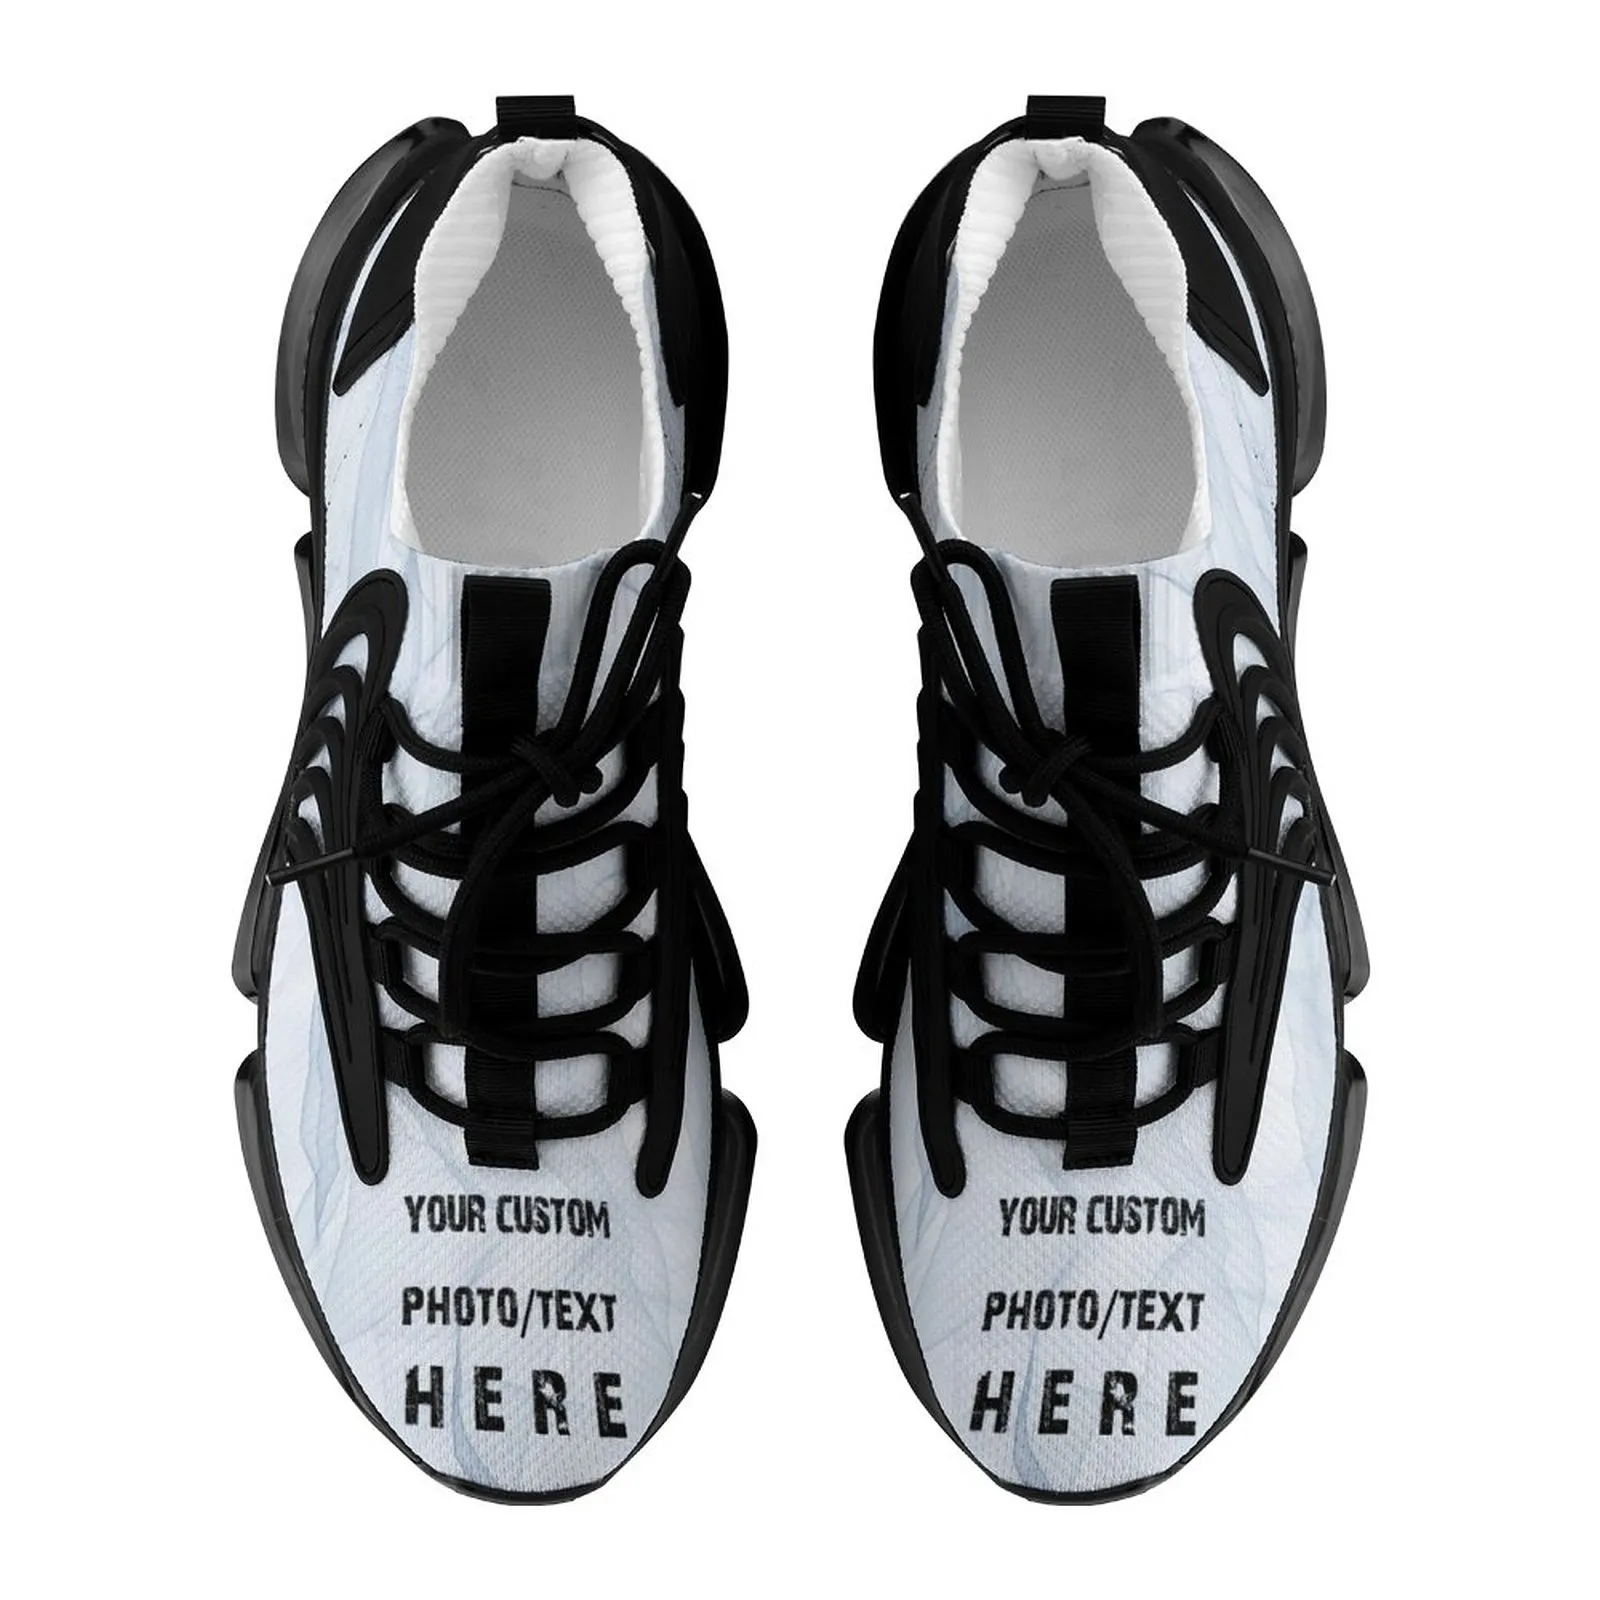 Chaussures personnalis￩es pour femmes chaussures de course baskets personnalis￩es avec texte de logo pour femmes 3 e5fn8eu1mnyu